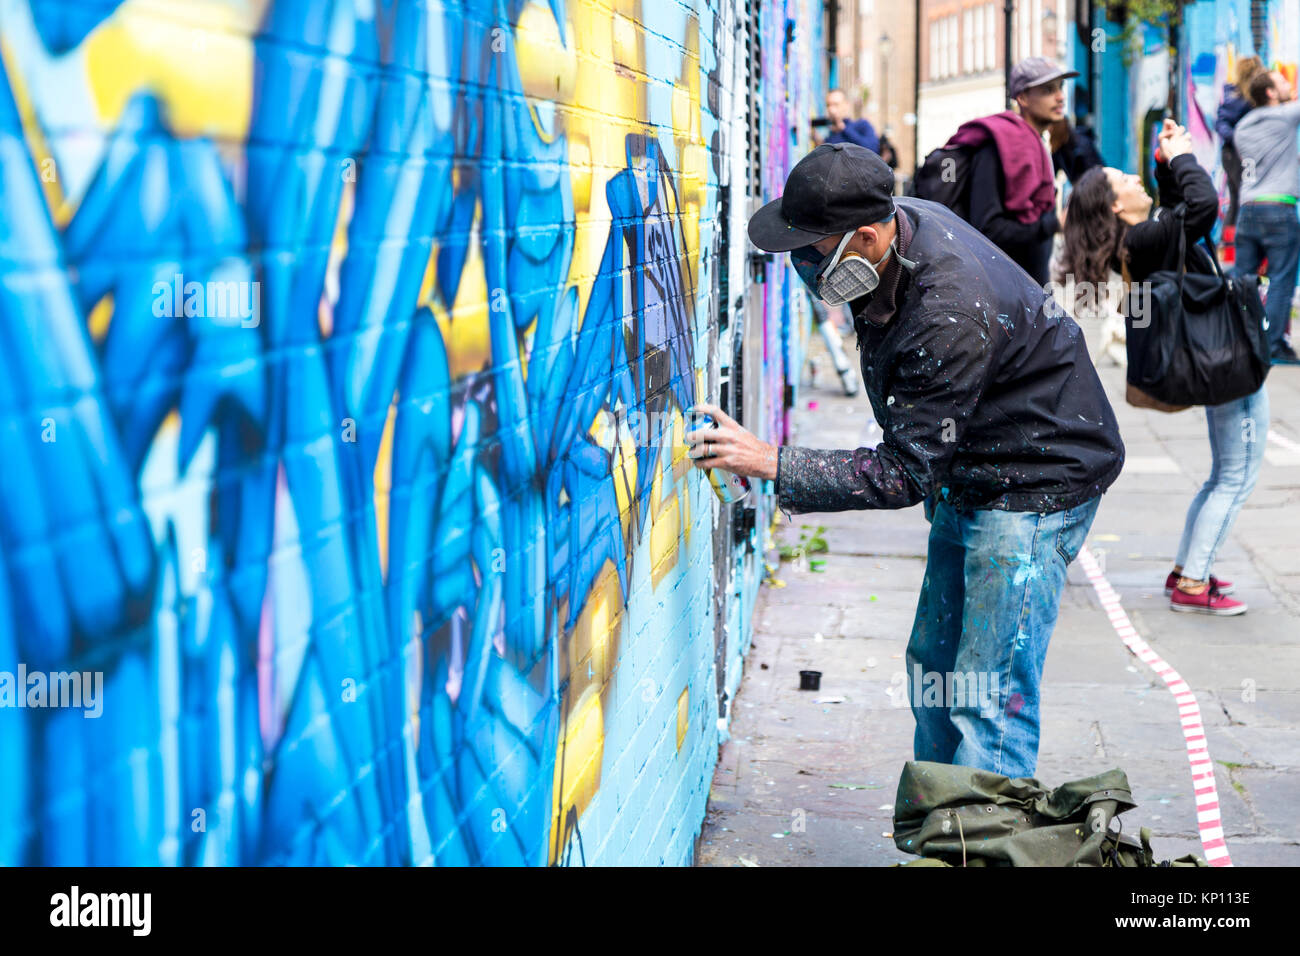 Graffiti artista callejero llevaba una máscara del respirador rociar las paredes en Fleur Street, London, UK Foto de stock